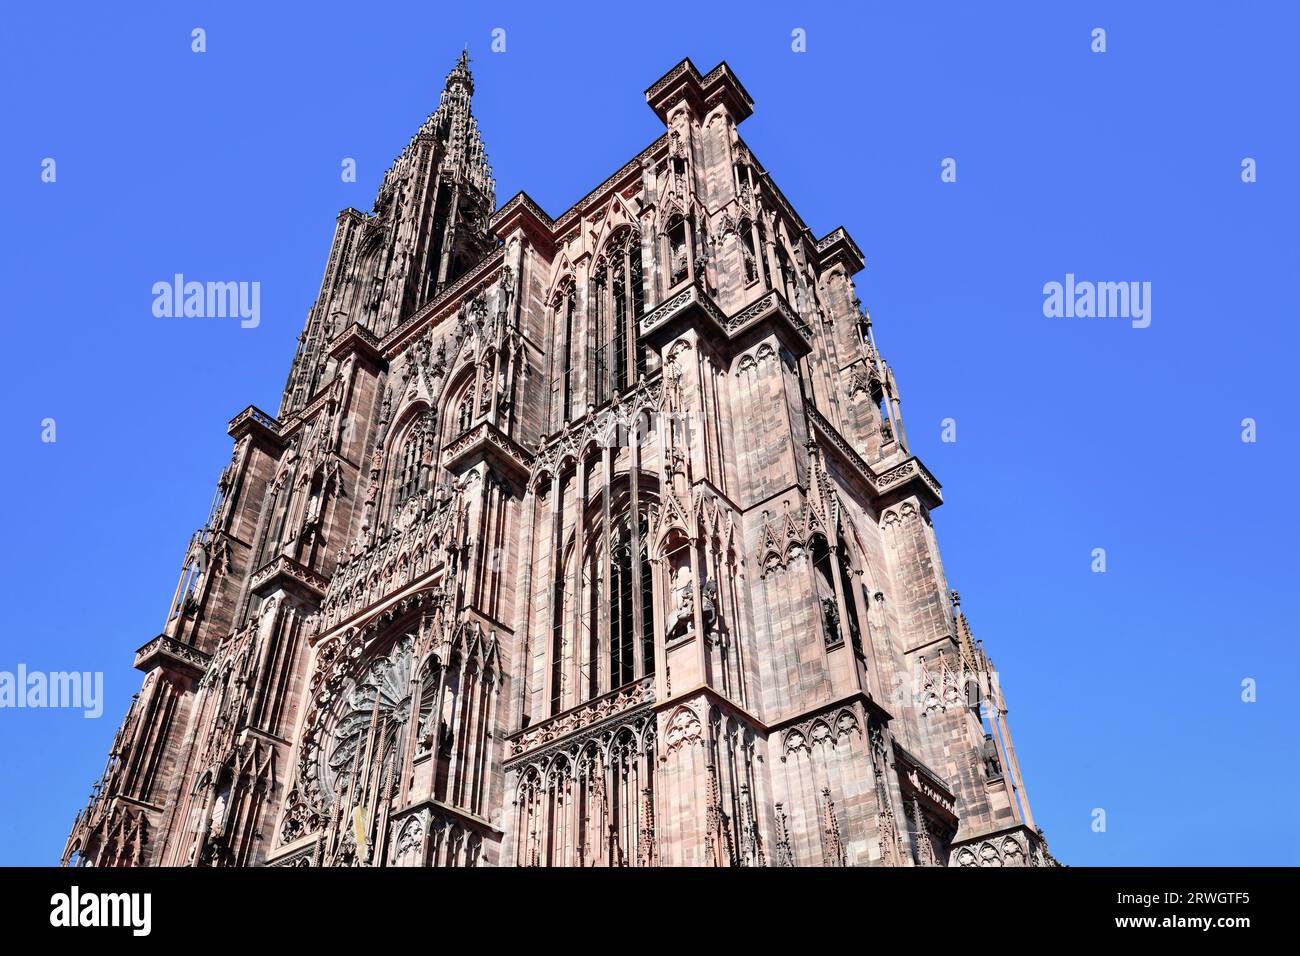 Turm der berühmten Straßburger Kathedrale in Frankreich im romanischen und gotischen Architekturstil Stockfoto